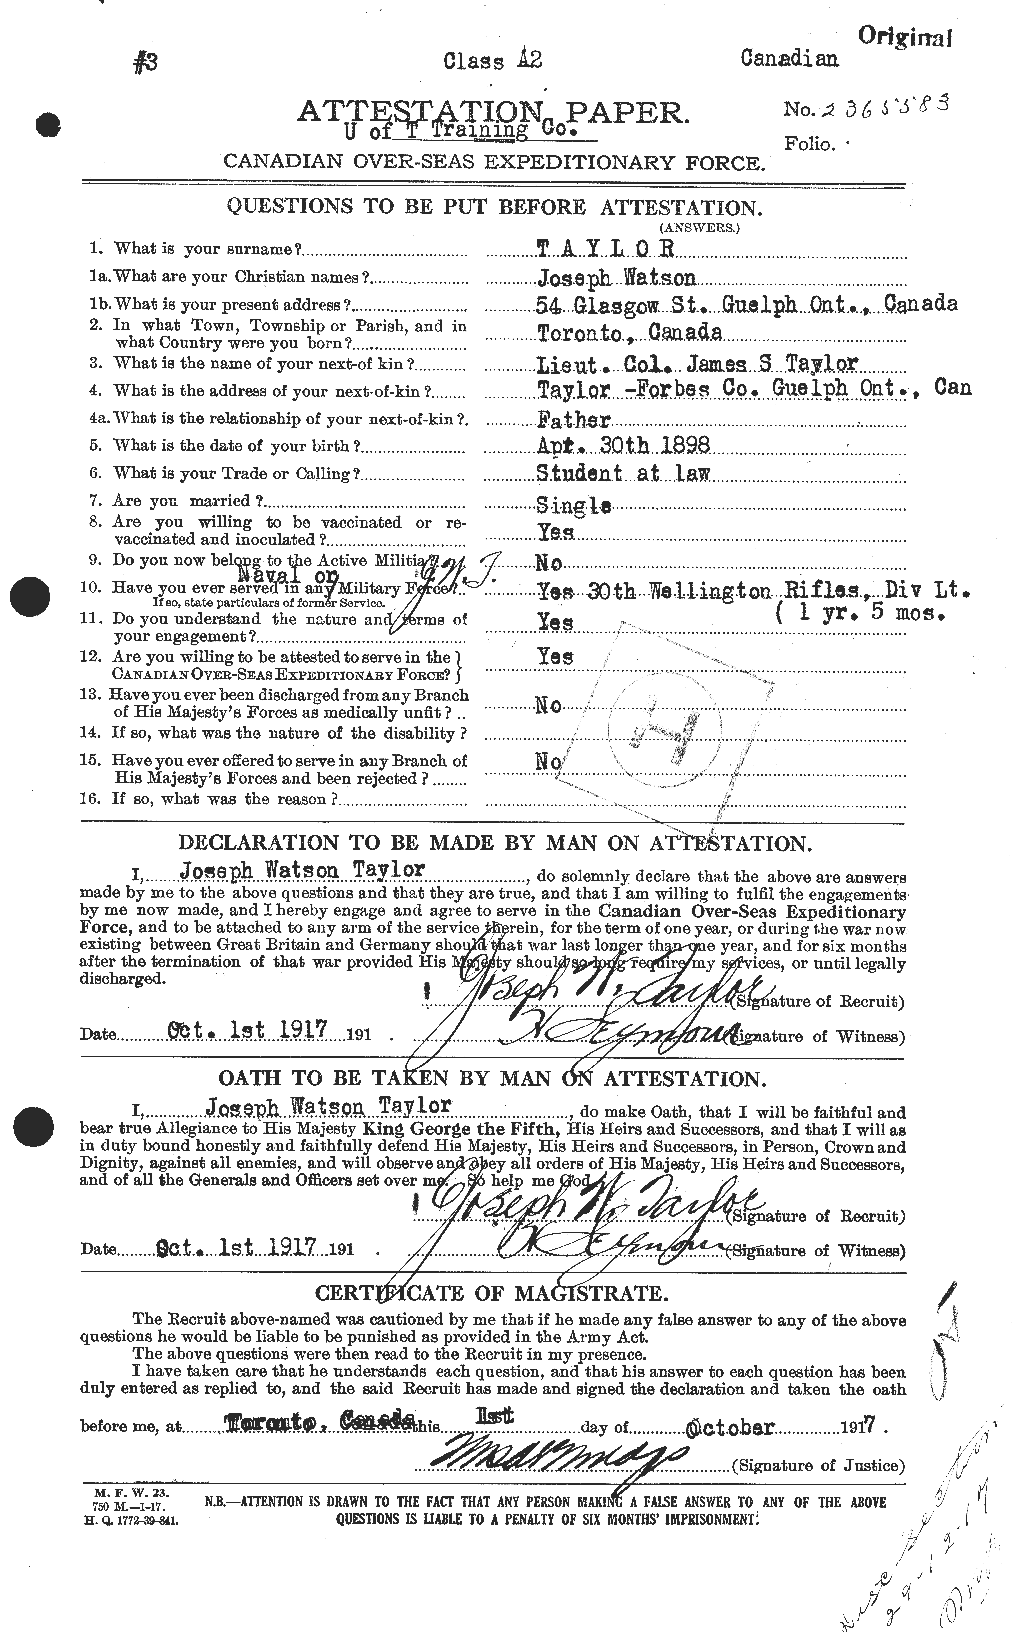 Dossiers du Personnel de la Première Guerre mondiale - CEC 627588a